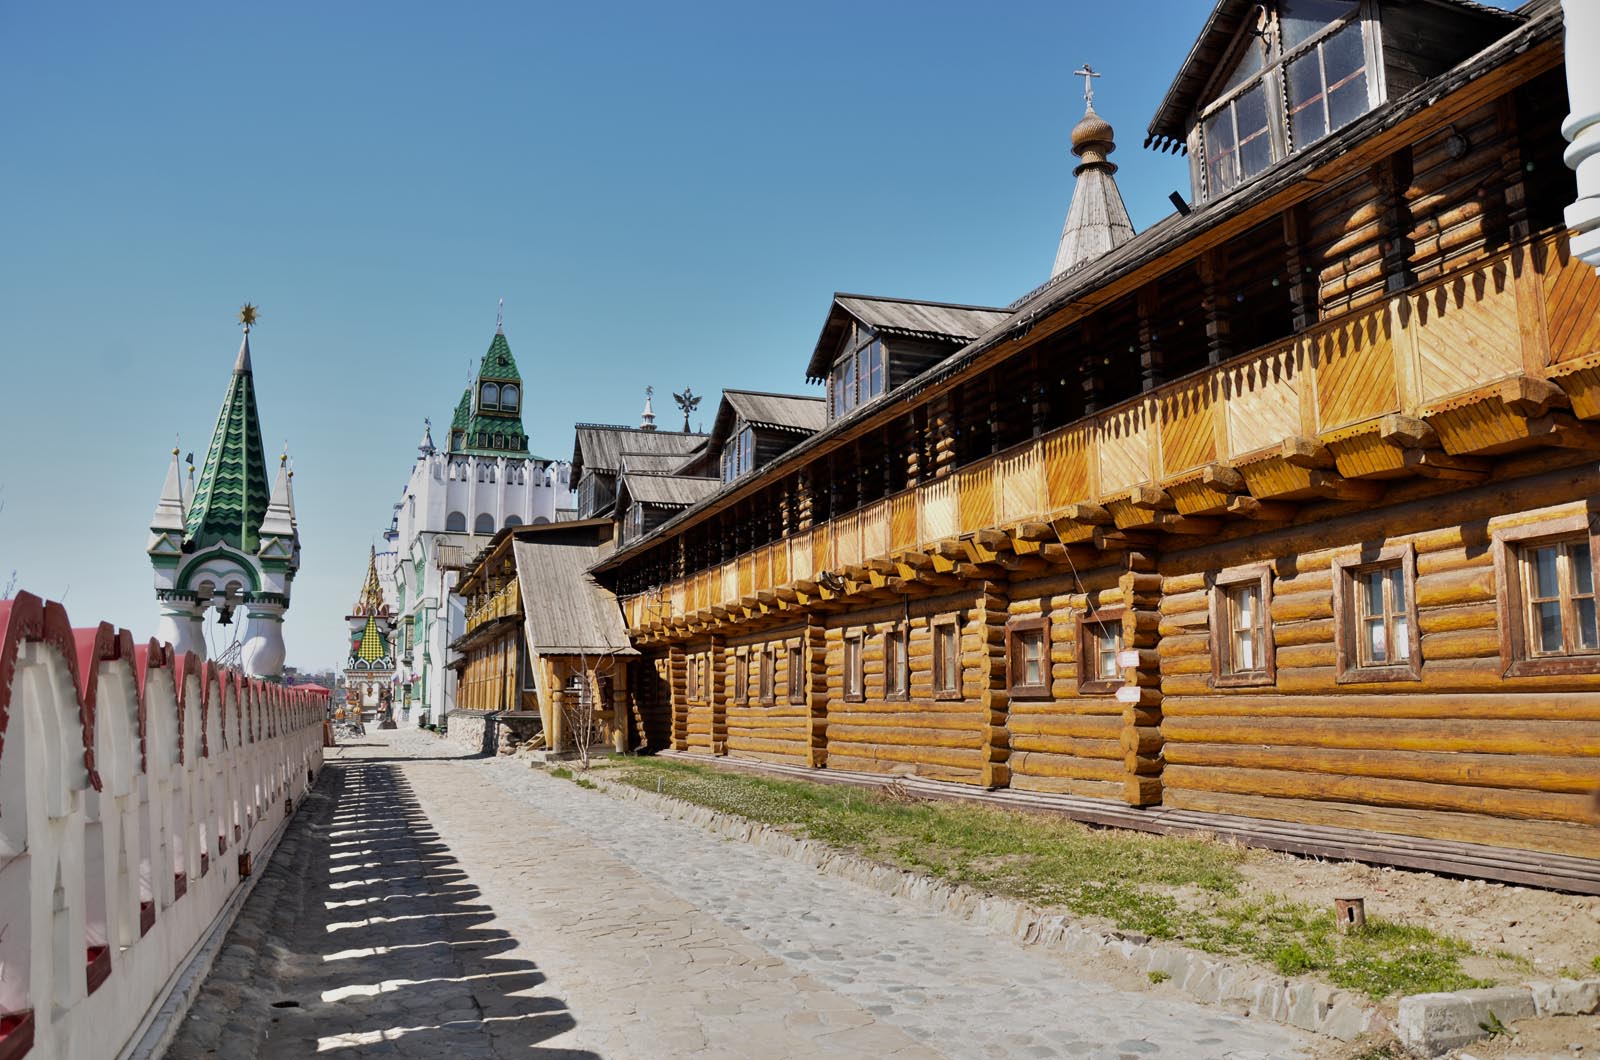 деревянный кремль москва